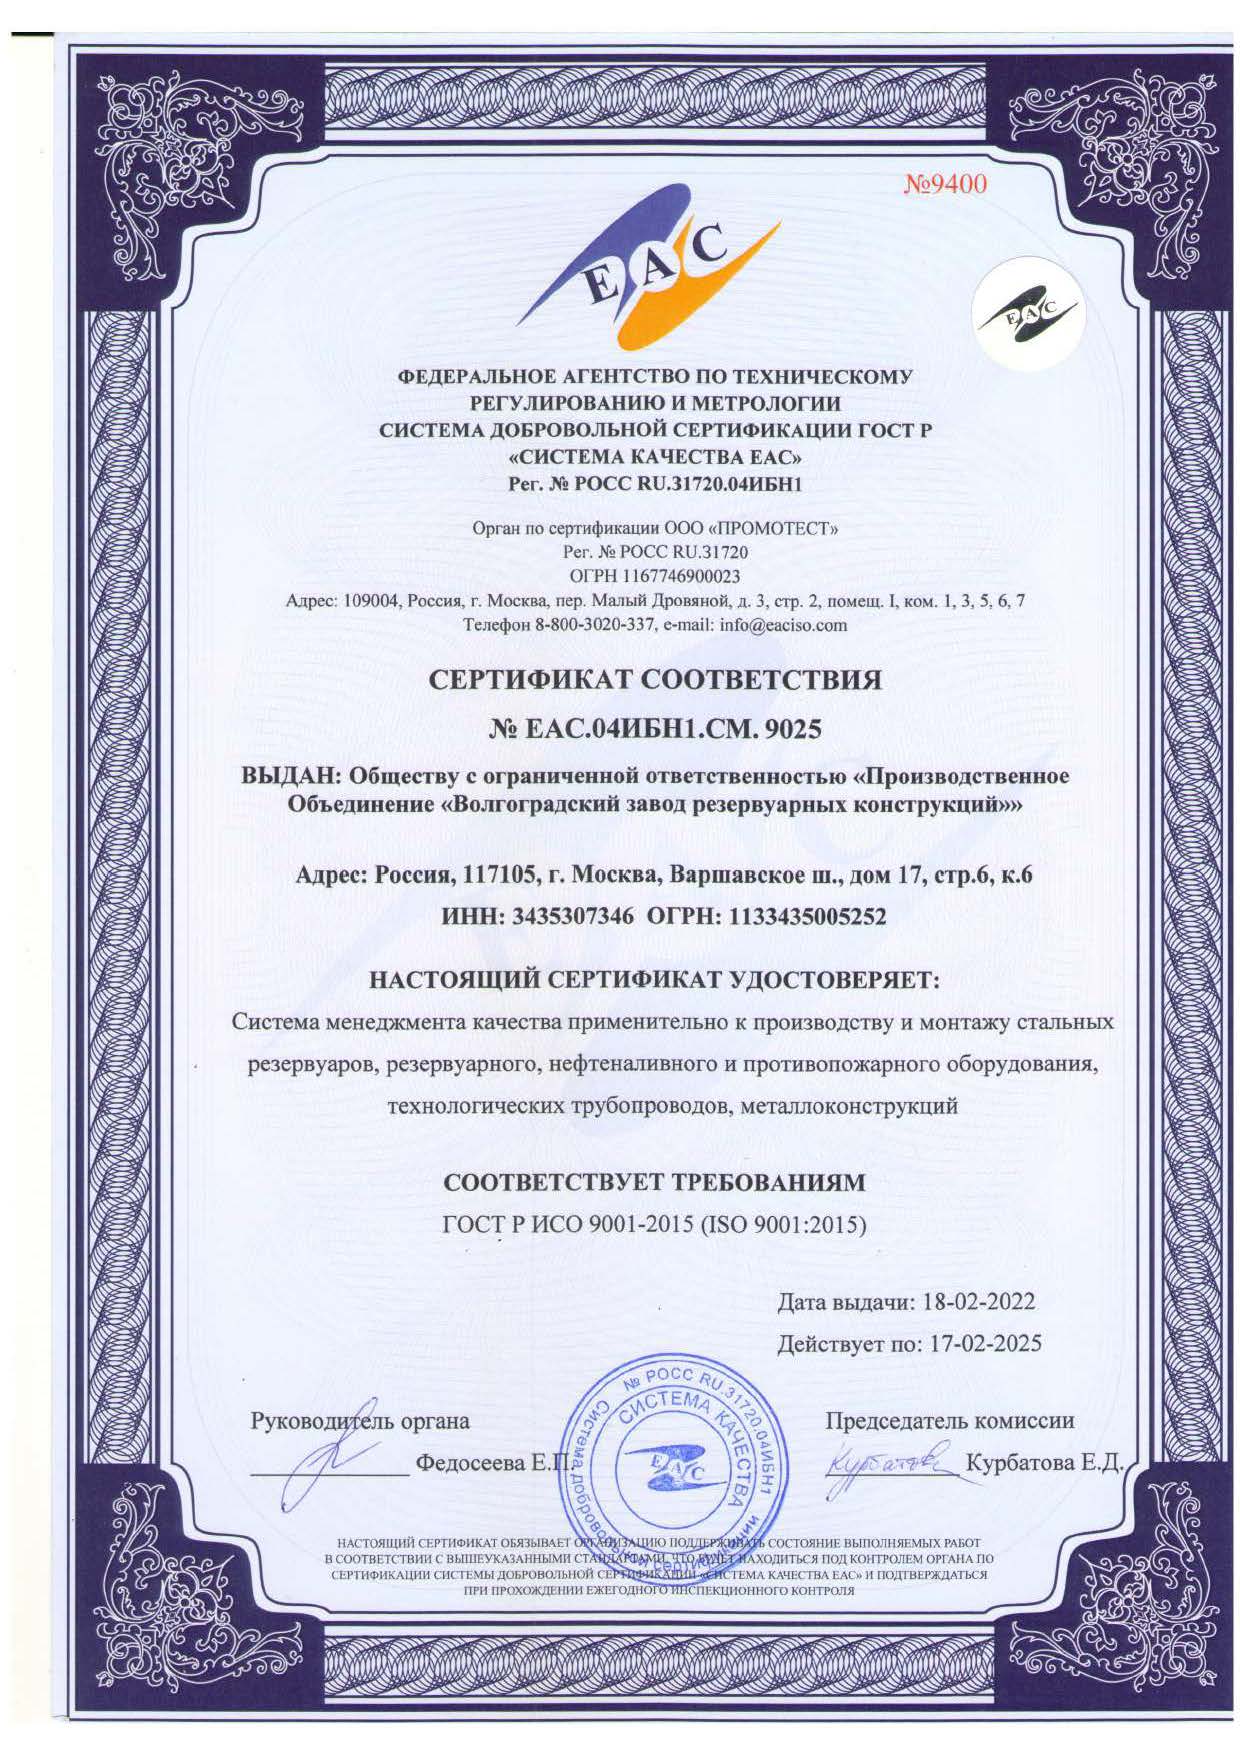 Сертификат соответствия ГОСТ 9001-2015 (ISO 9001:2015) на производство и монтажа стальных резервуаров, резервуарного, нефтеналивного и противопожарного оборудования, технологических трубопроводов и металлоконструкций